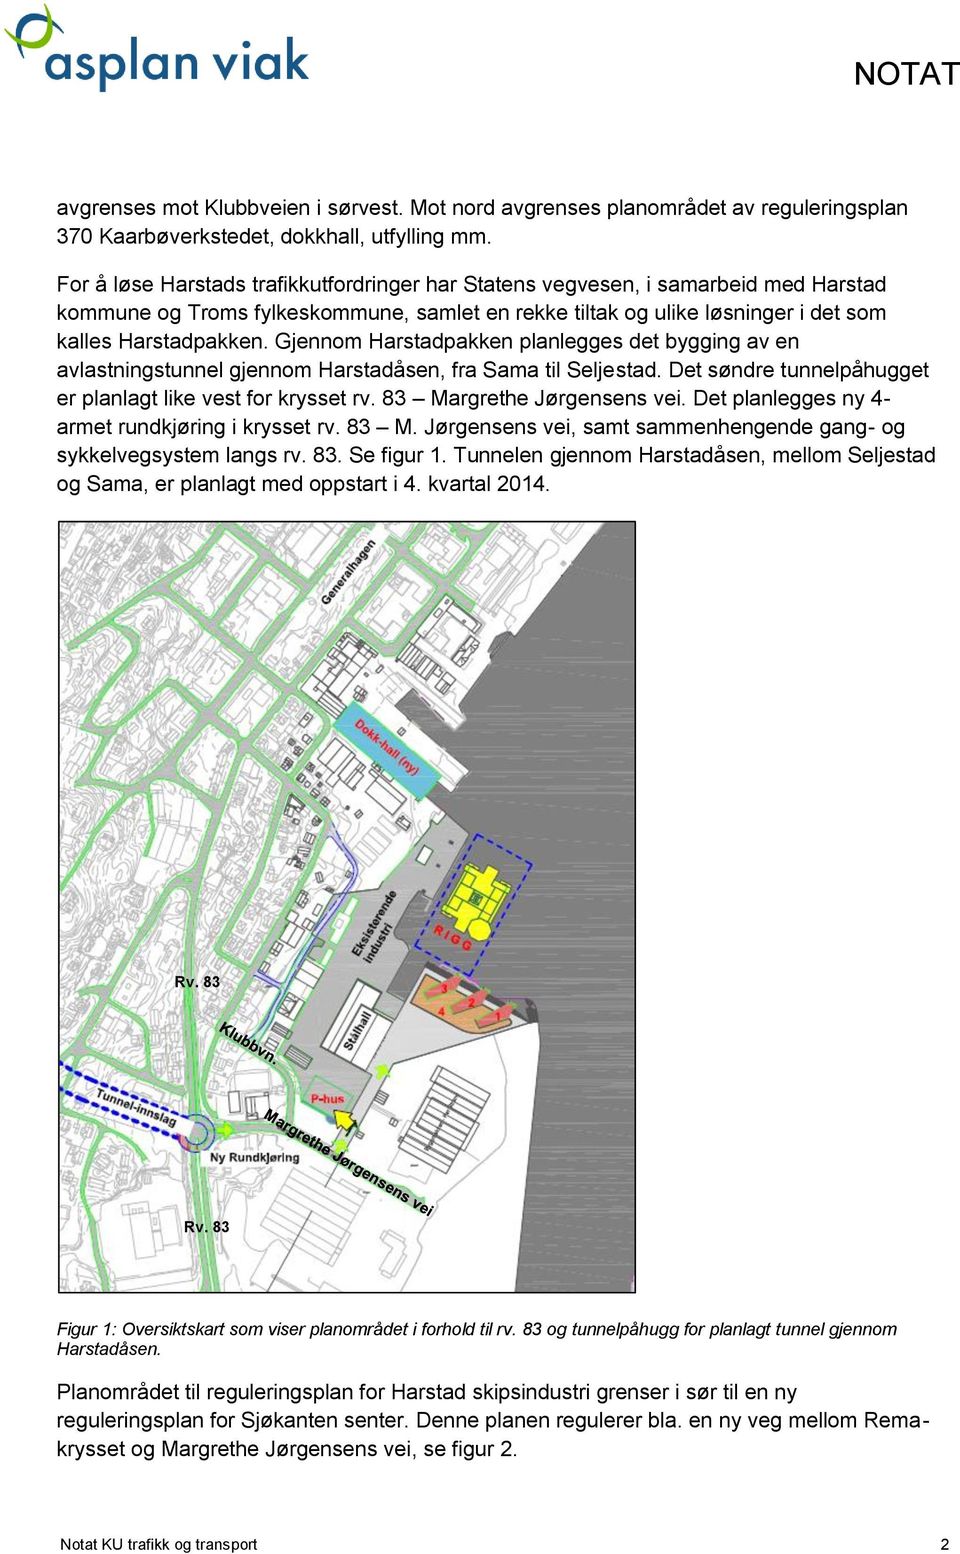 Gjennom Harstadpakken planlegges det bygging av en avlastningstunnel gjennom Harstadåsen, fra Sama til Seljestad. Det søndre tunnelpåhugget er planlagt like vest for krysset rv.